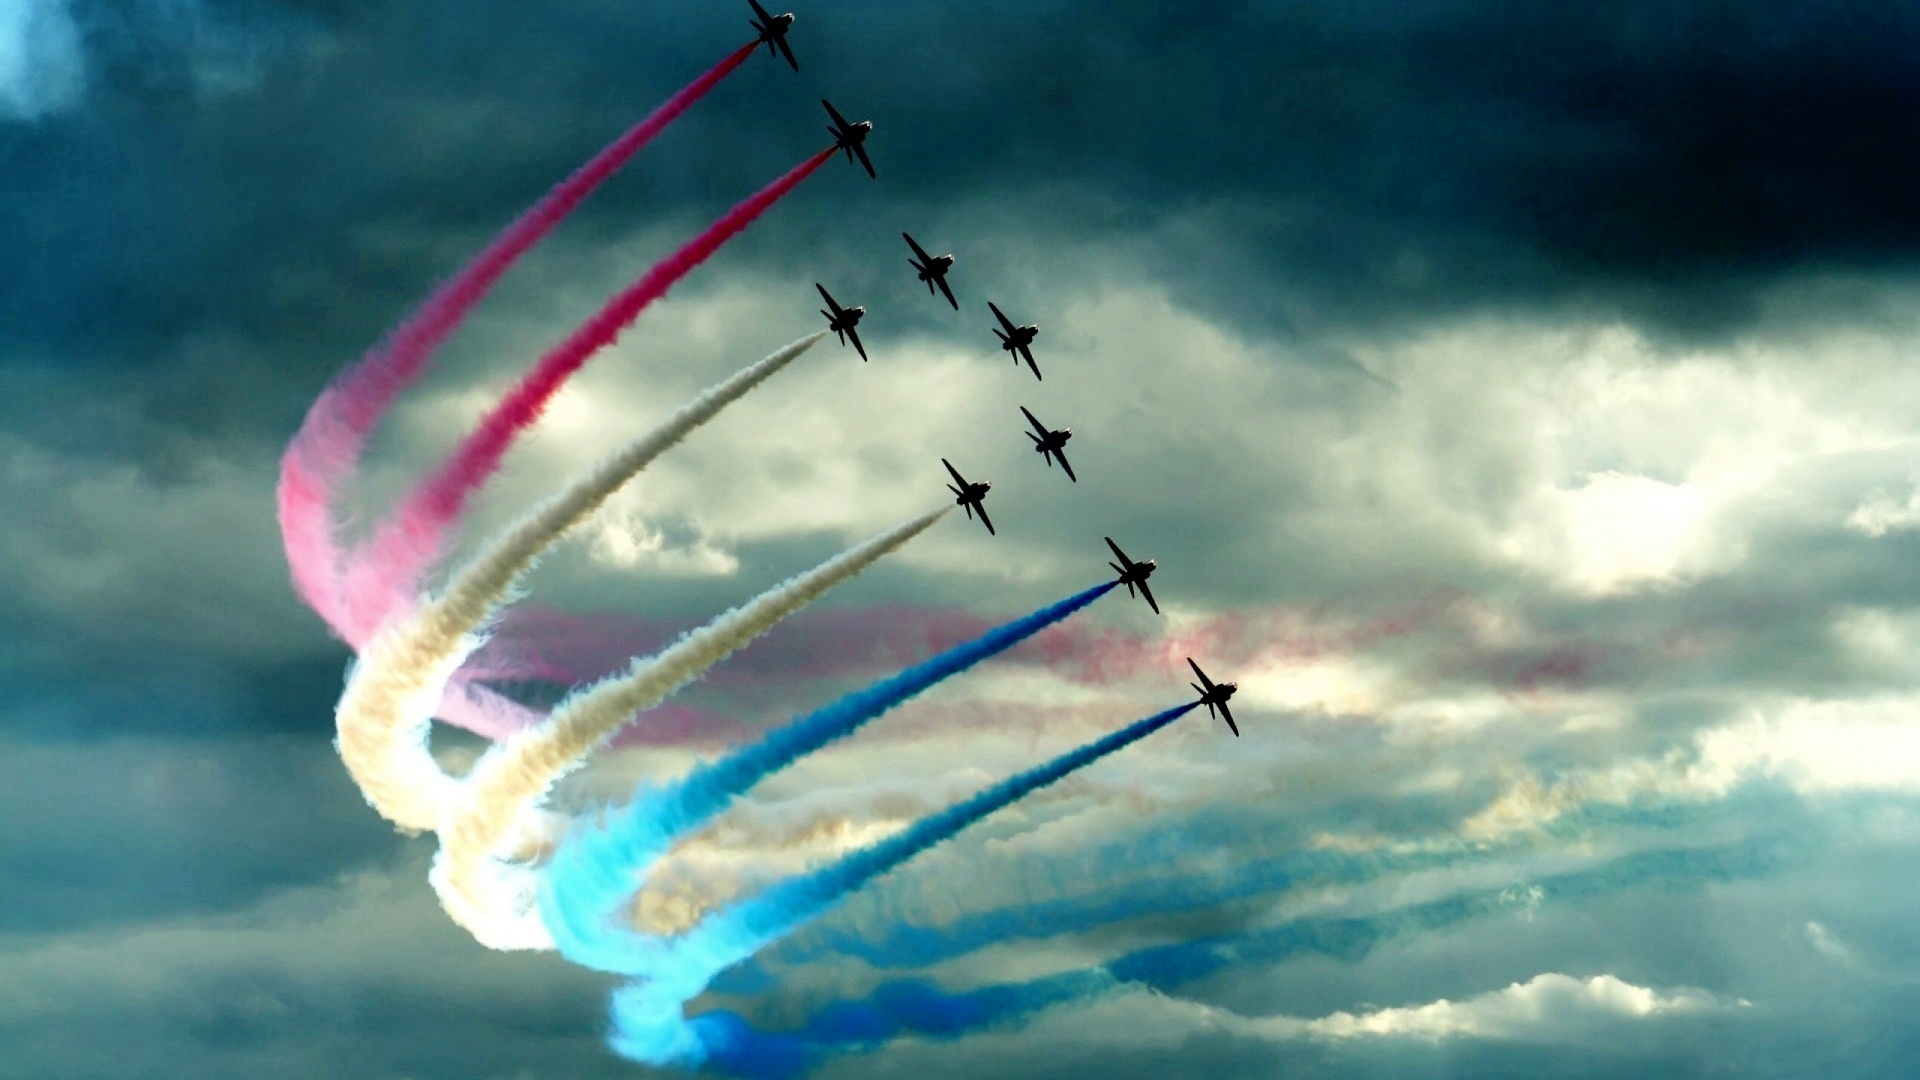 air force fond d'écran hd,bleu,salon de l'aéronautique,ciel,acrobaties aériennes,nuage